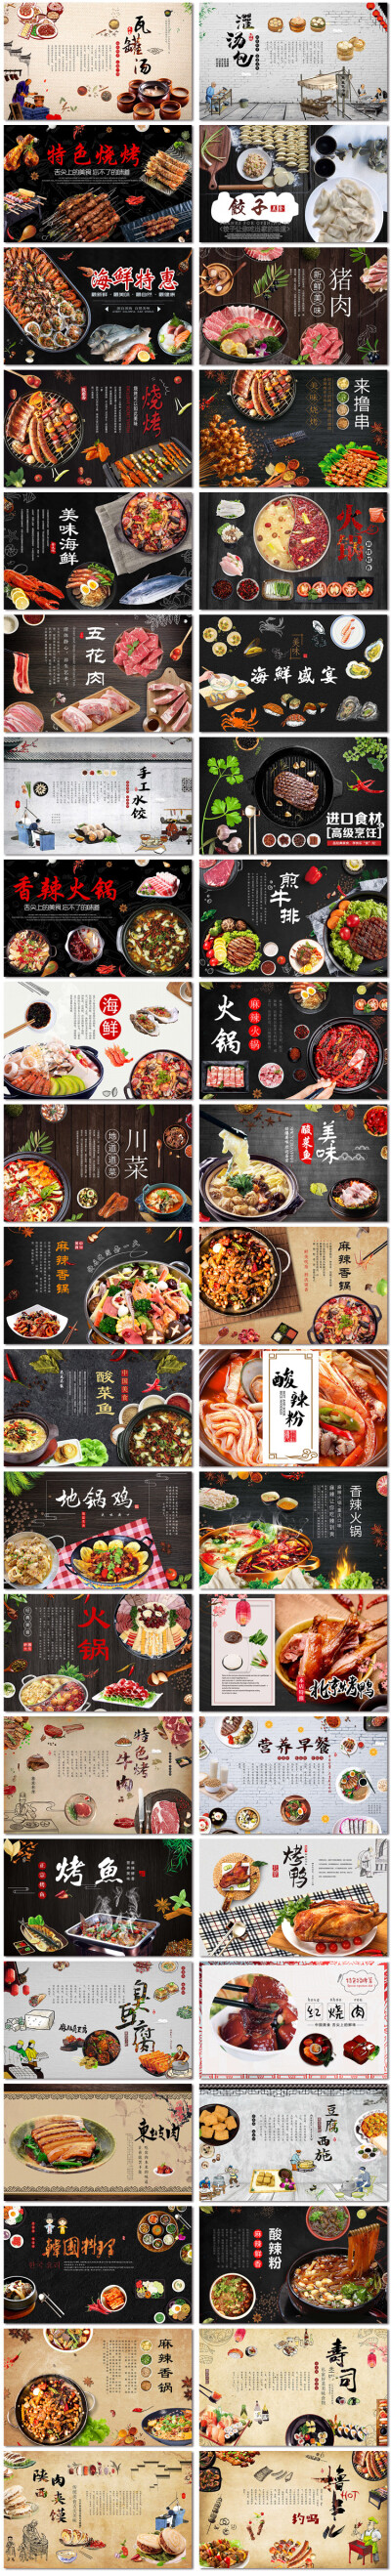 美食餐饮餐馆香火锅料理烧烤展板海报背景墙画psd模板素材设计